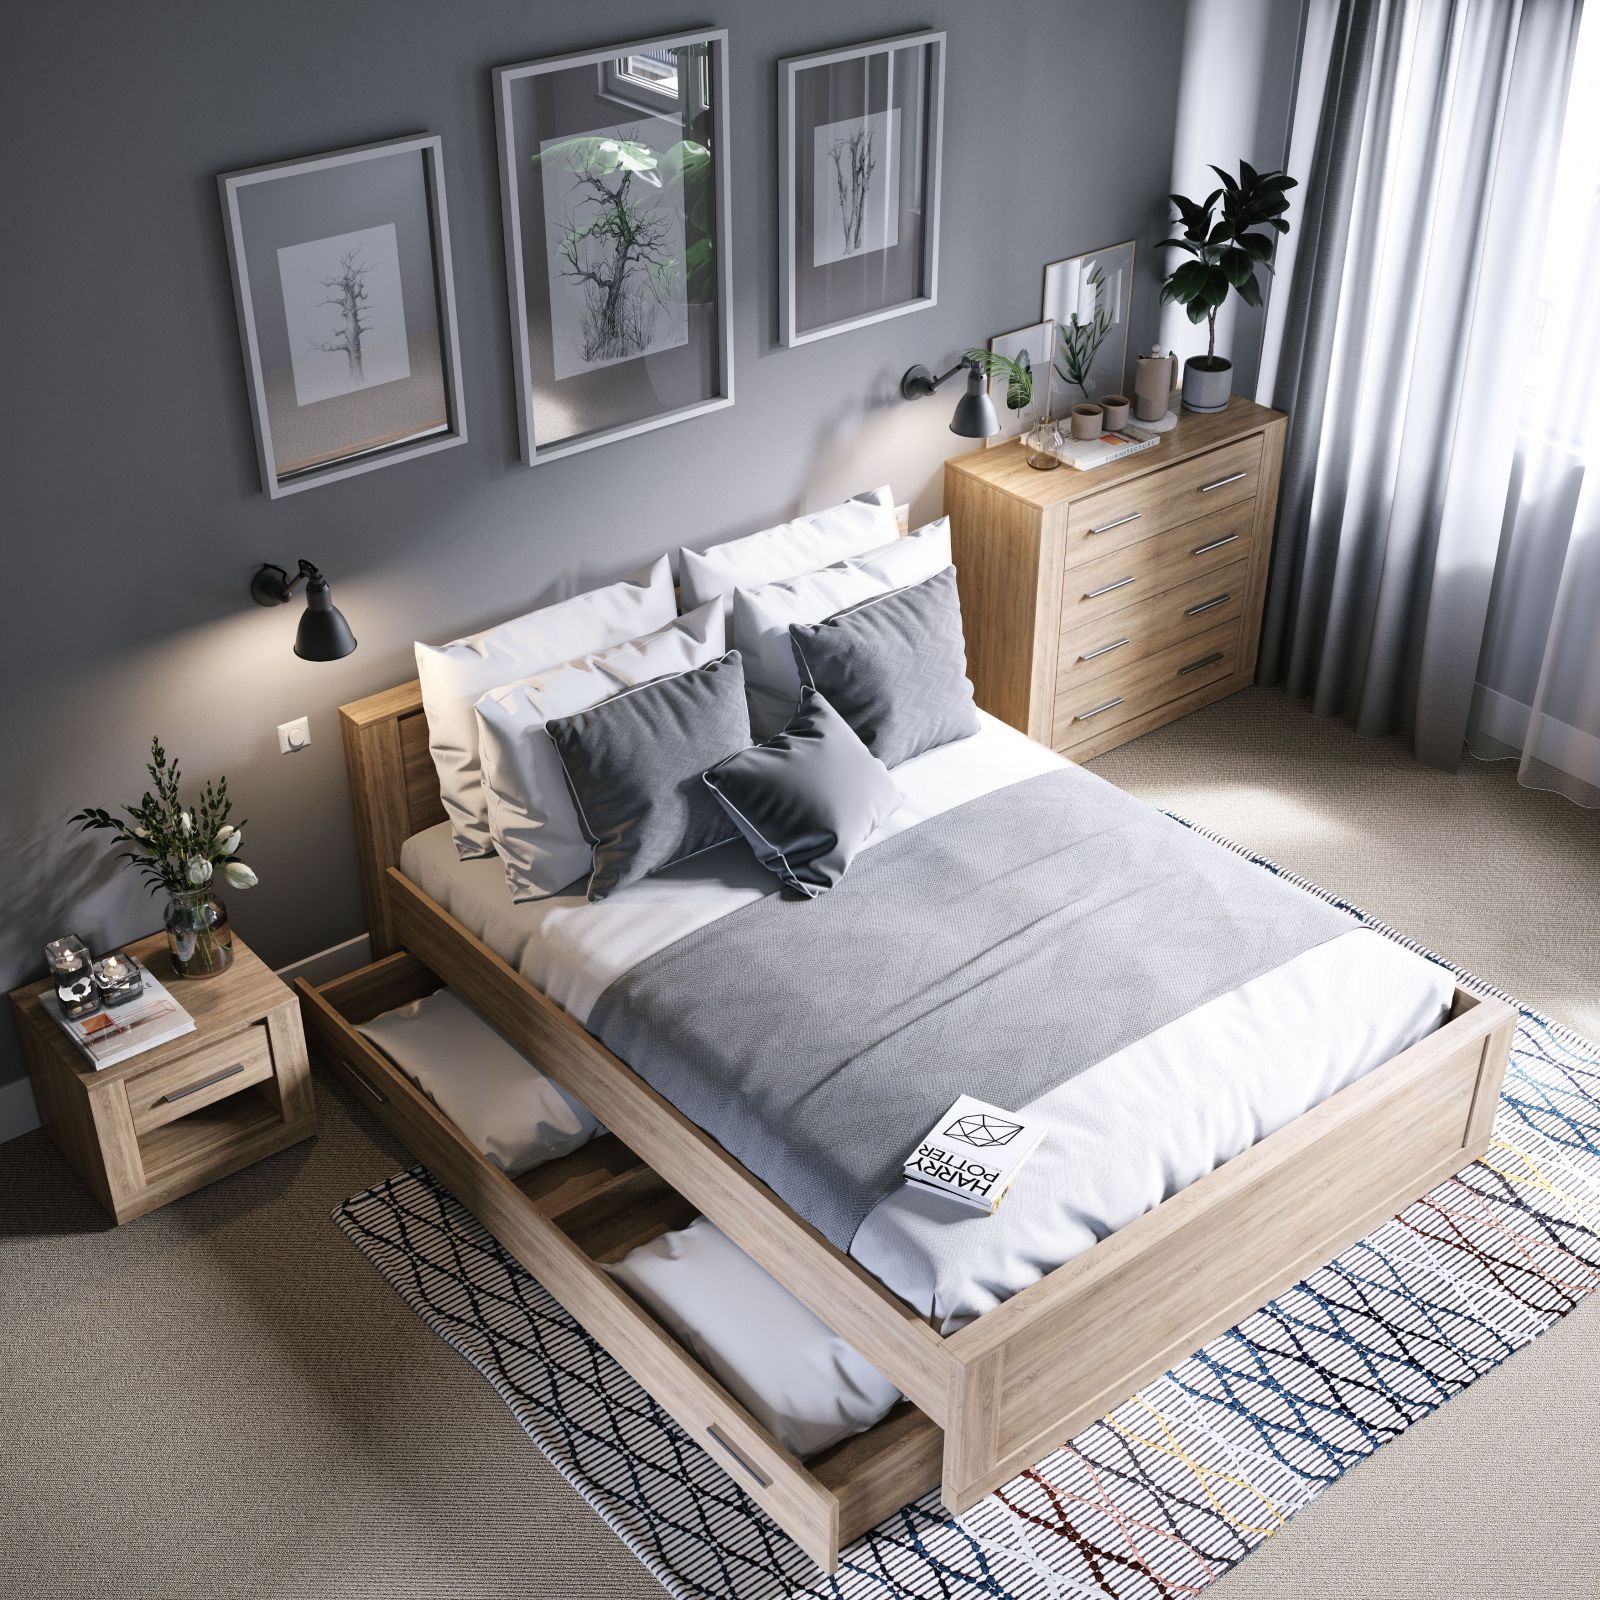 cách trang trí phòng ngủ đẹp, đơn giản và hiện đại K-Bedding